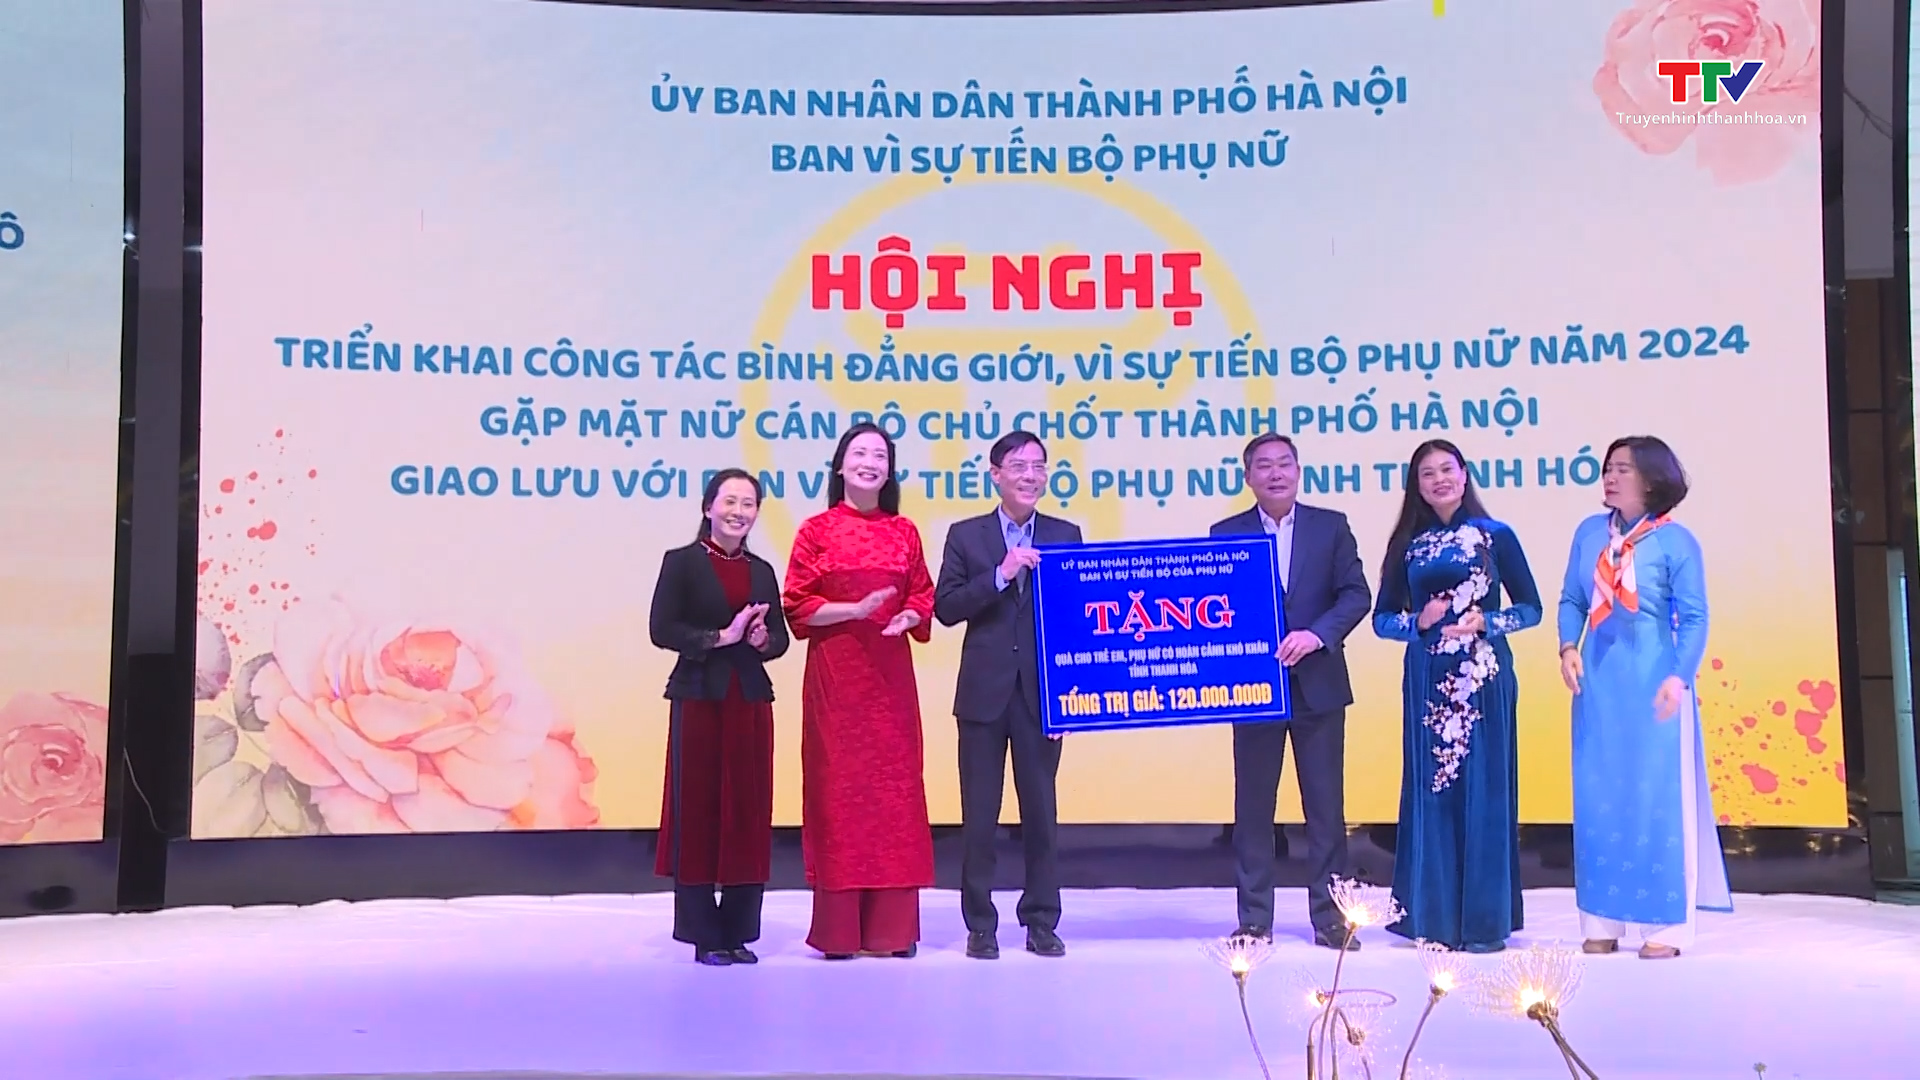 Ban vì sự tiến bộ phụ nữ thành phố Hà Nội và tỉnh Thanh Hóa triển khai công tác bình đẳng giới, vì sự tiến bộ phụ nữ- Ảnh 3.